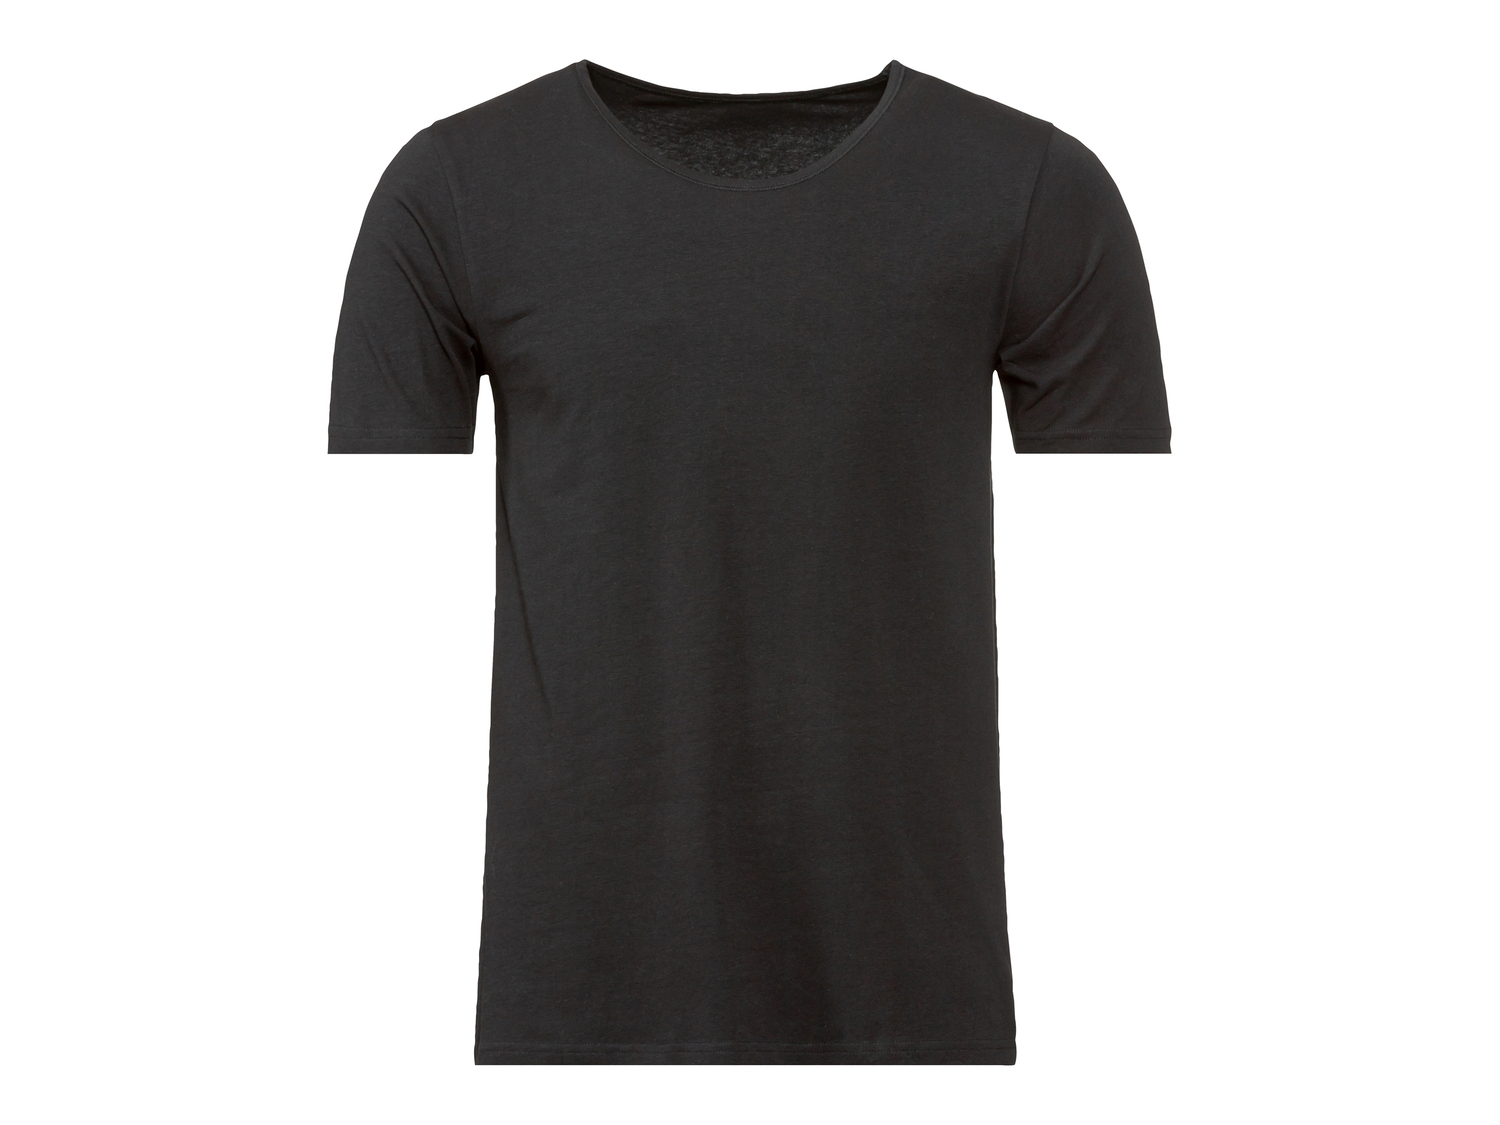 T-shirt intima da uomo Livergy, prezzo 5.99 &#8364; 
Misure: M-XL 
- Con cotone ...